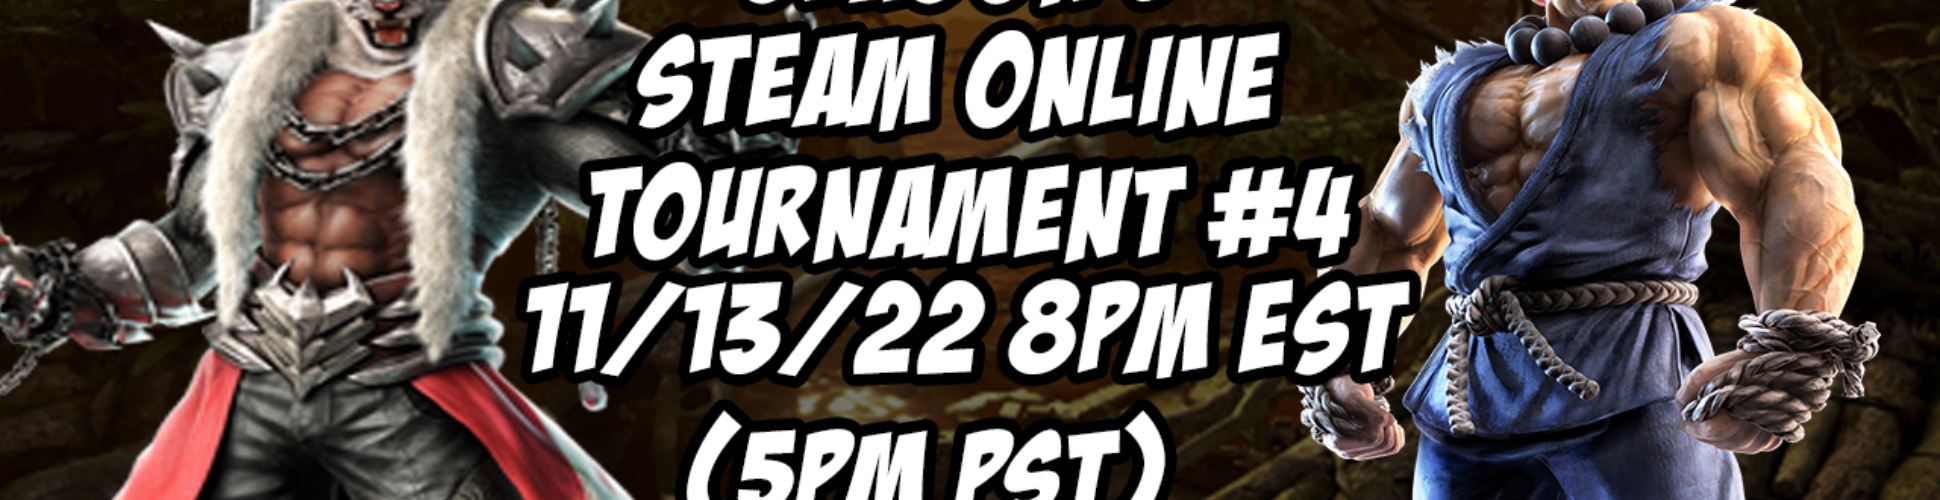 Tekken 7 Season 5 Steam Online Tournament #4 11/13/22 8pm EST